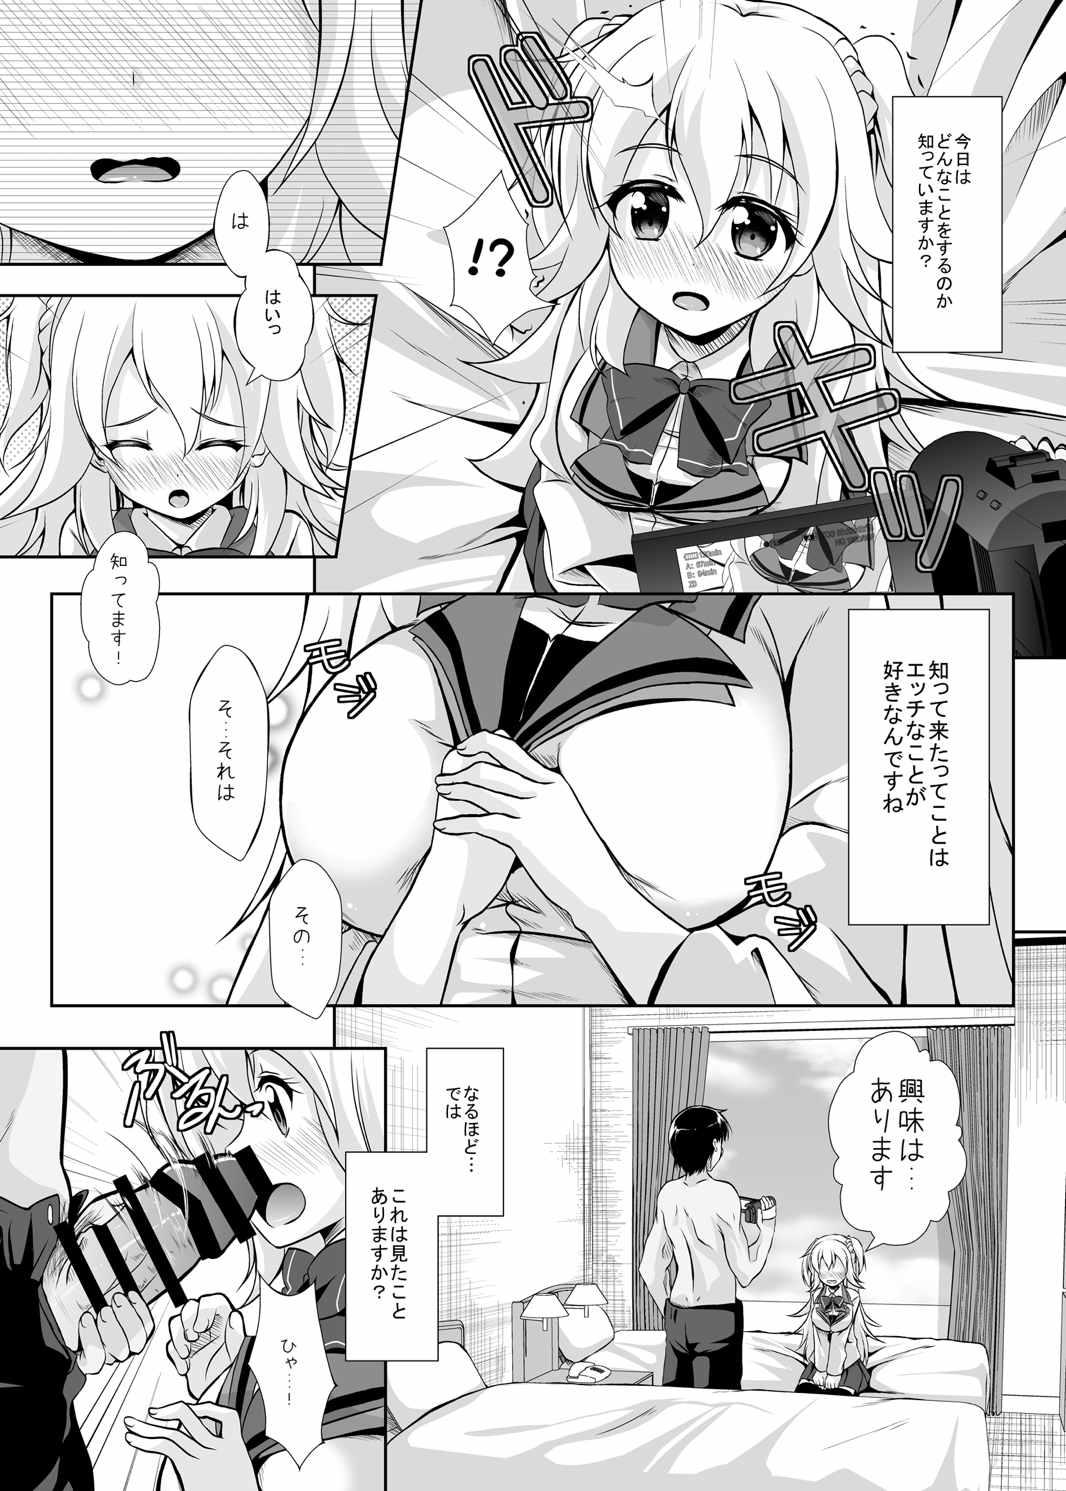 Gaping Hajimete no H na Satsuei-kai - Gakusen toshi asterisk Freaky - Page 5